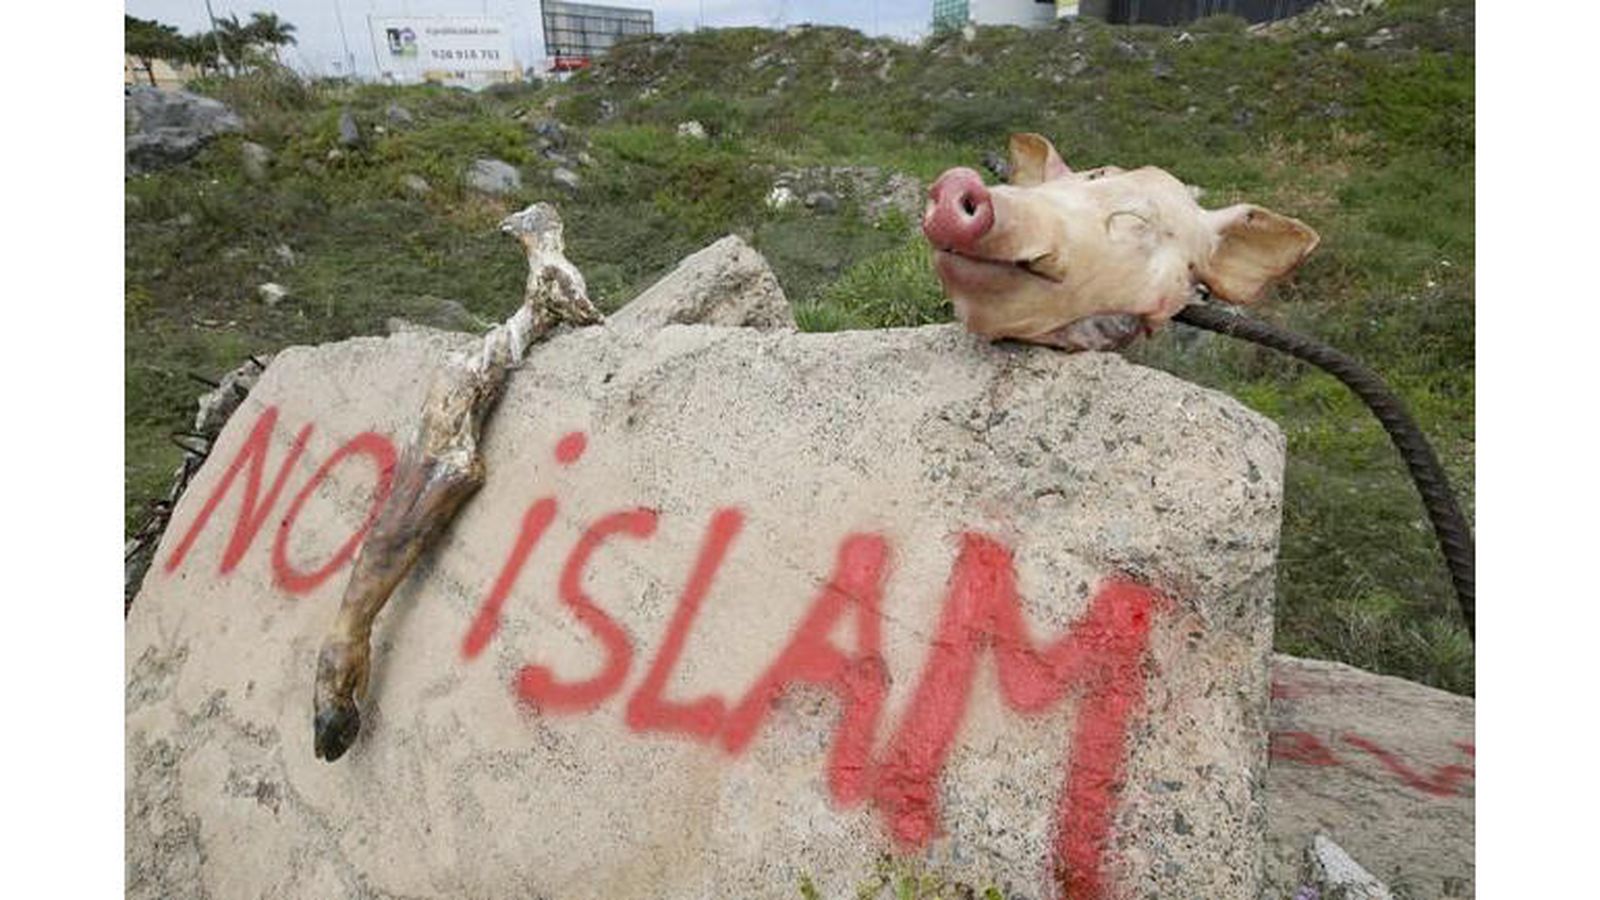 Foto: Aparecen restos de animales sacrificados y pintadas en los terrenos de la futura mezquita islámica.  (Fotografía: Quique Curbelo / La Provincia. Diario de las Palmas)